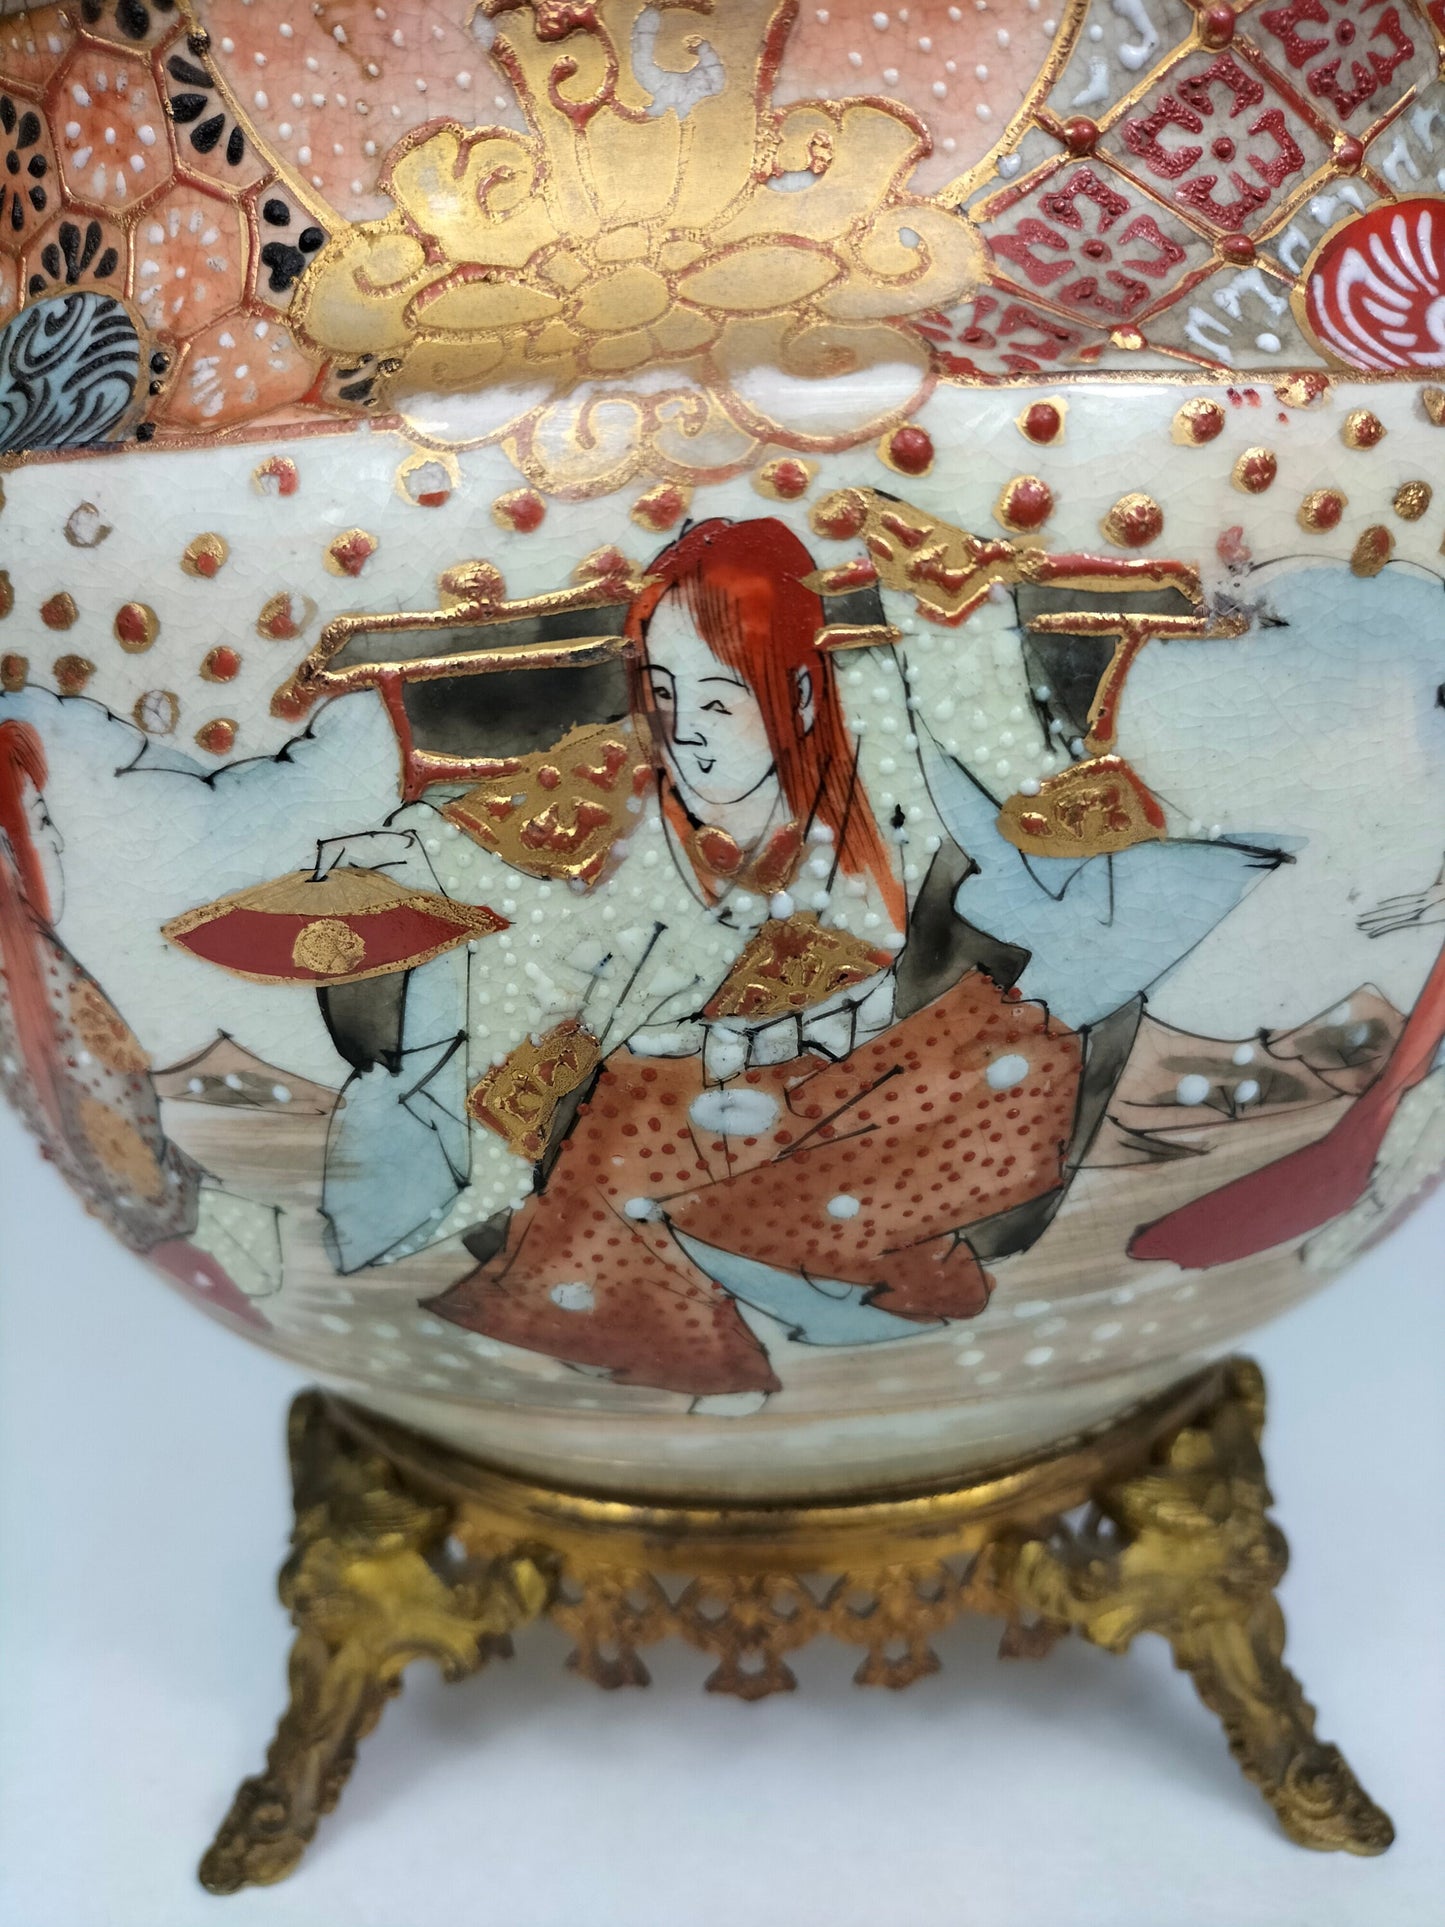 Ancien vase satsuma japonais monté en laiton doré // Epoque Meijji - 19ème siècle